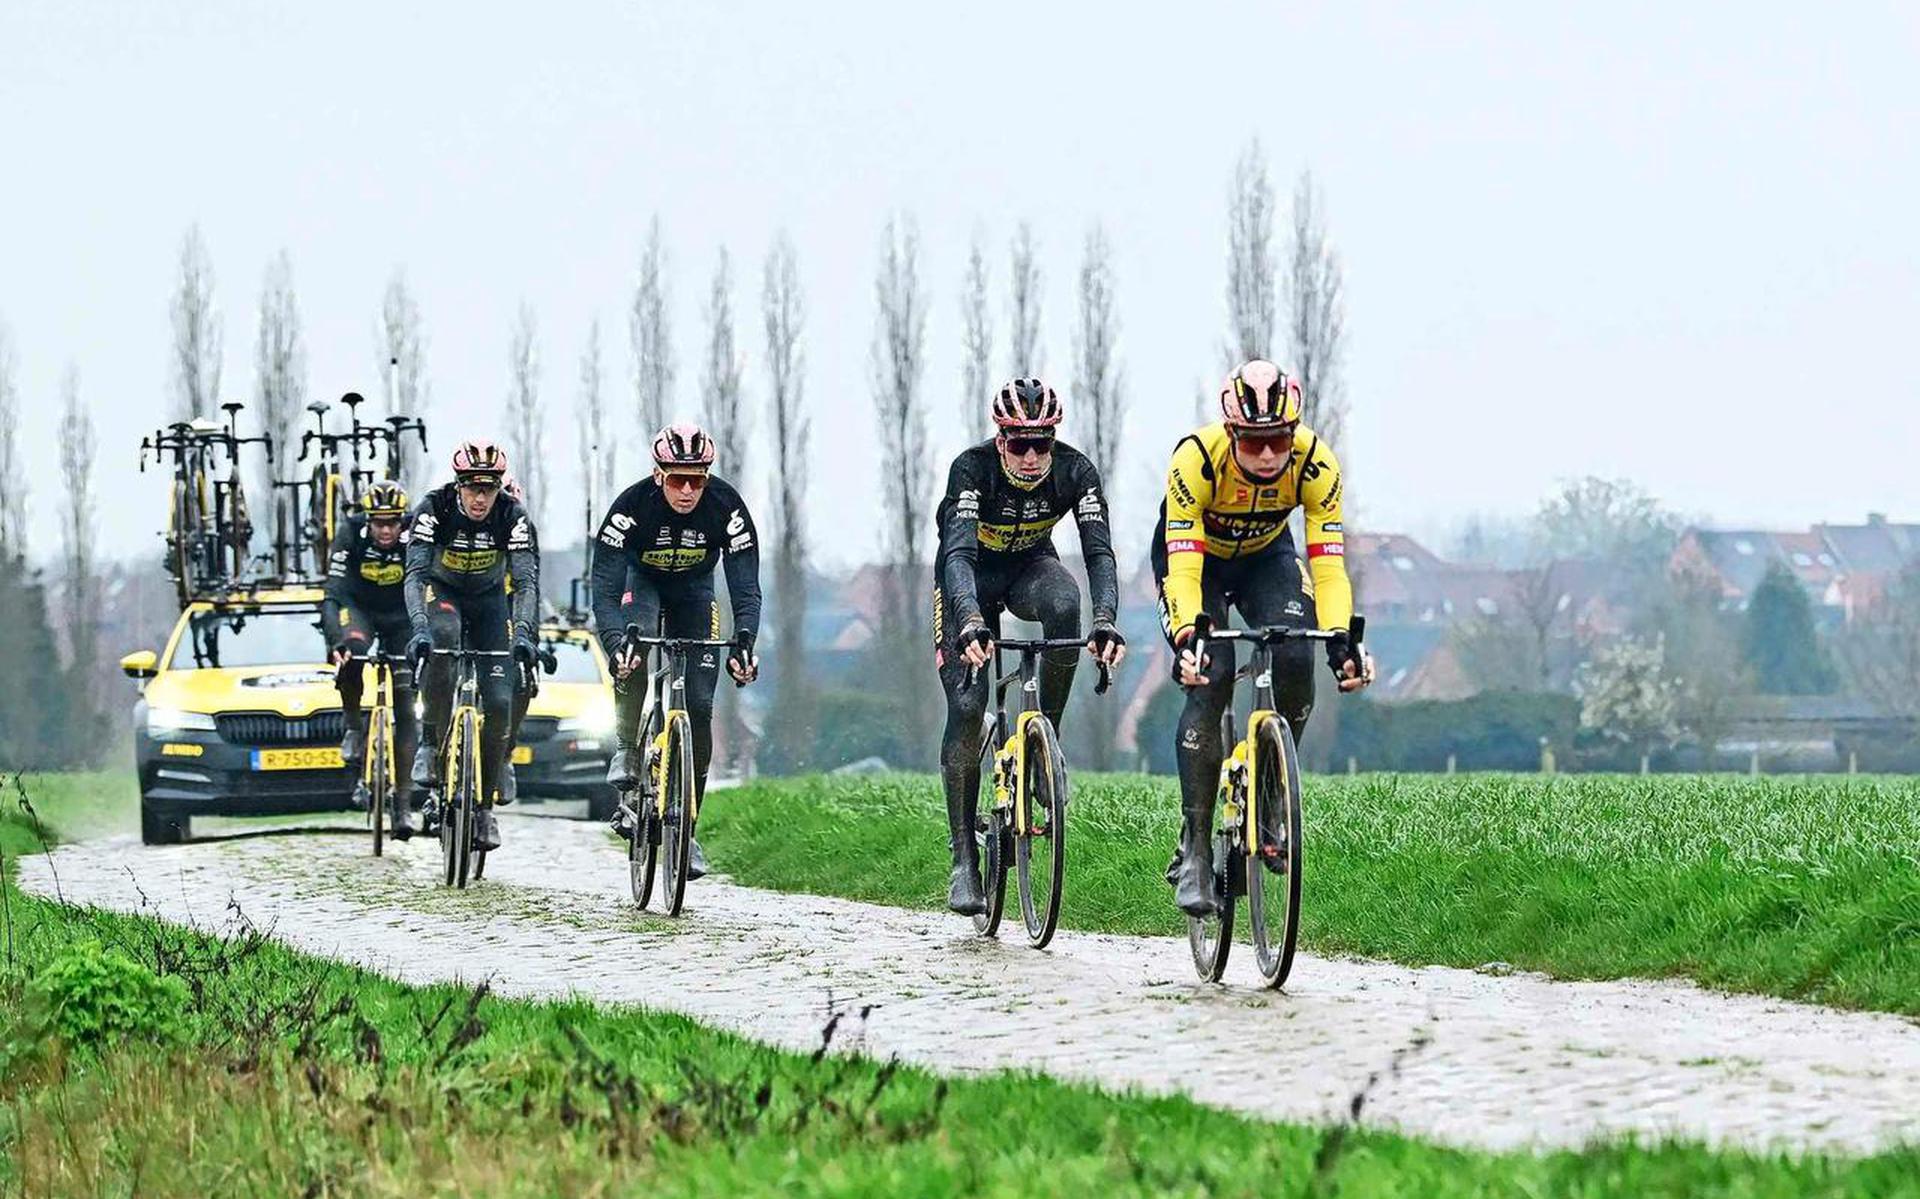 De renners van Jumbo-Visma tijdens de verkenning van Parijs-Roubaix, zondag moet het gebeuren.